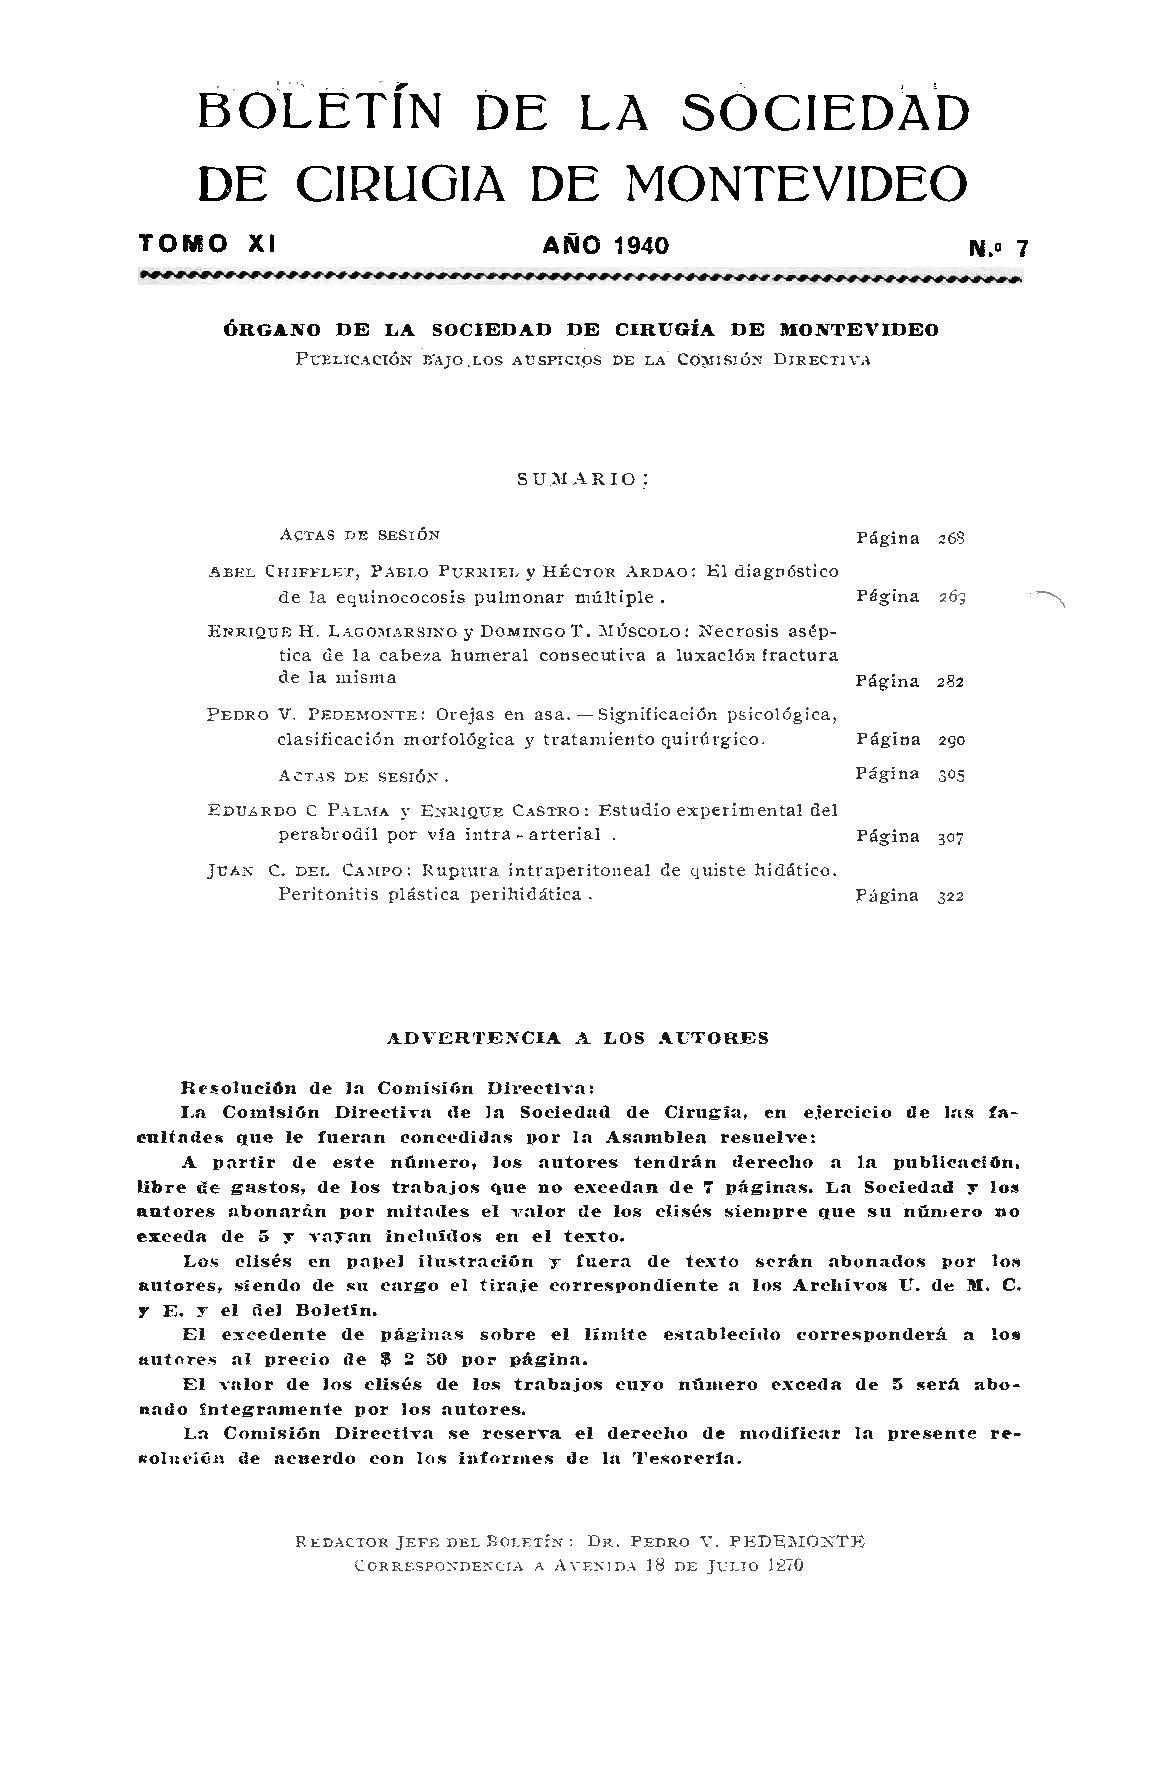 					Ver Vol. 11 Núm. 7 (1940): Boletín de la Sociedad de Cirugía de Montevideo
				